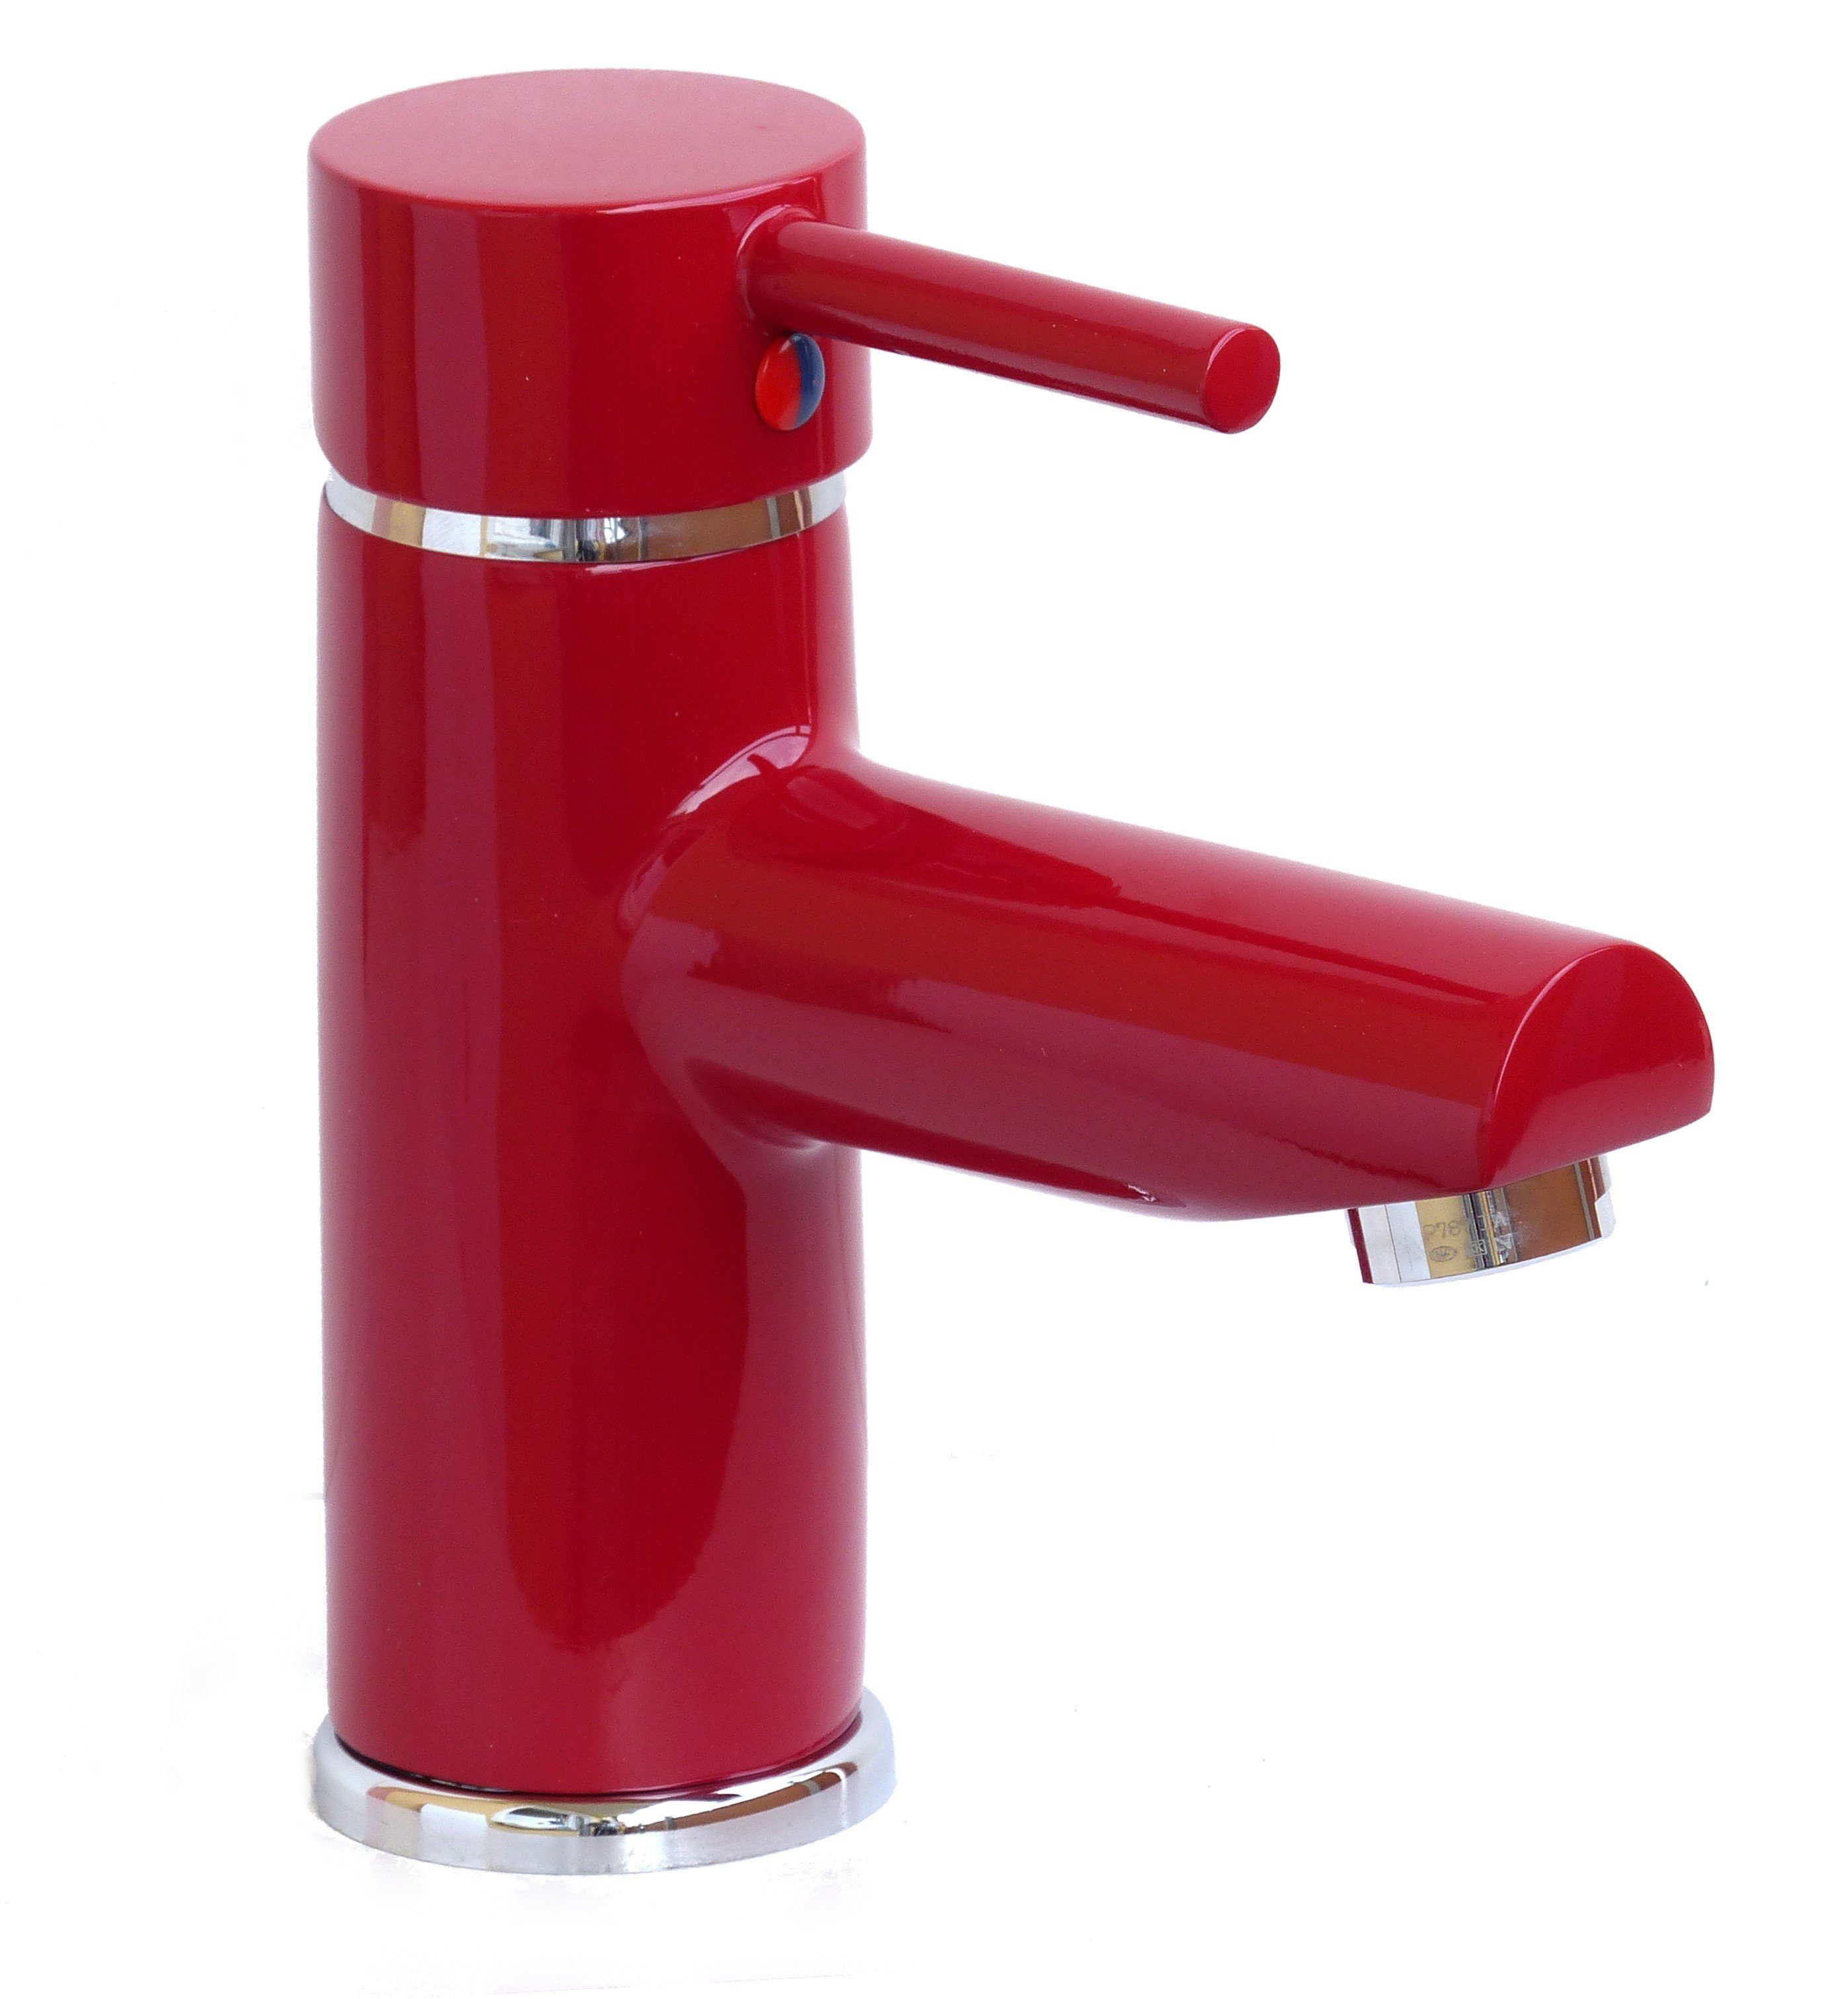 WAGNER® Spültischarmatur Einhebel-Waschtischarmatur Waschbecken Wasserhahn Bad Armatur farbig rot